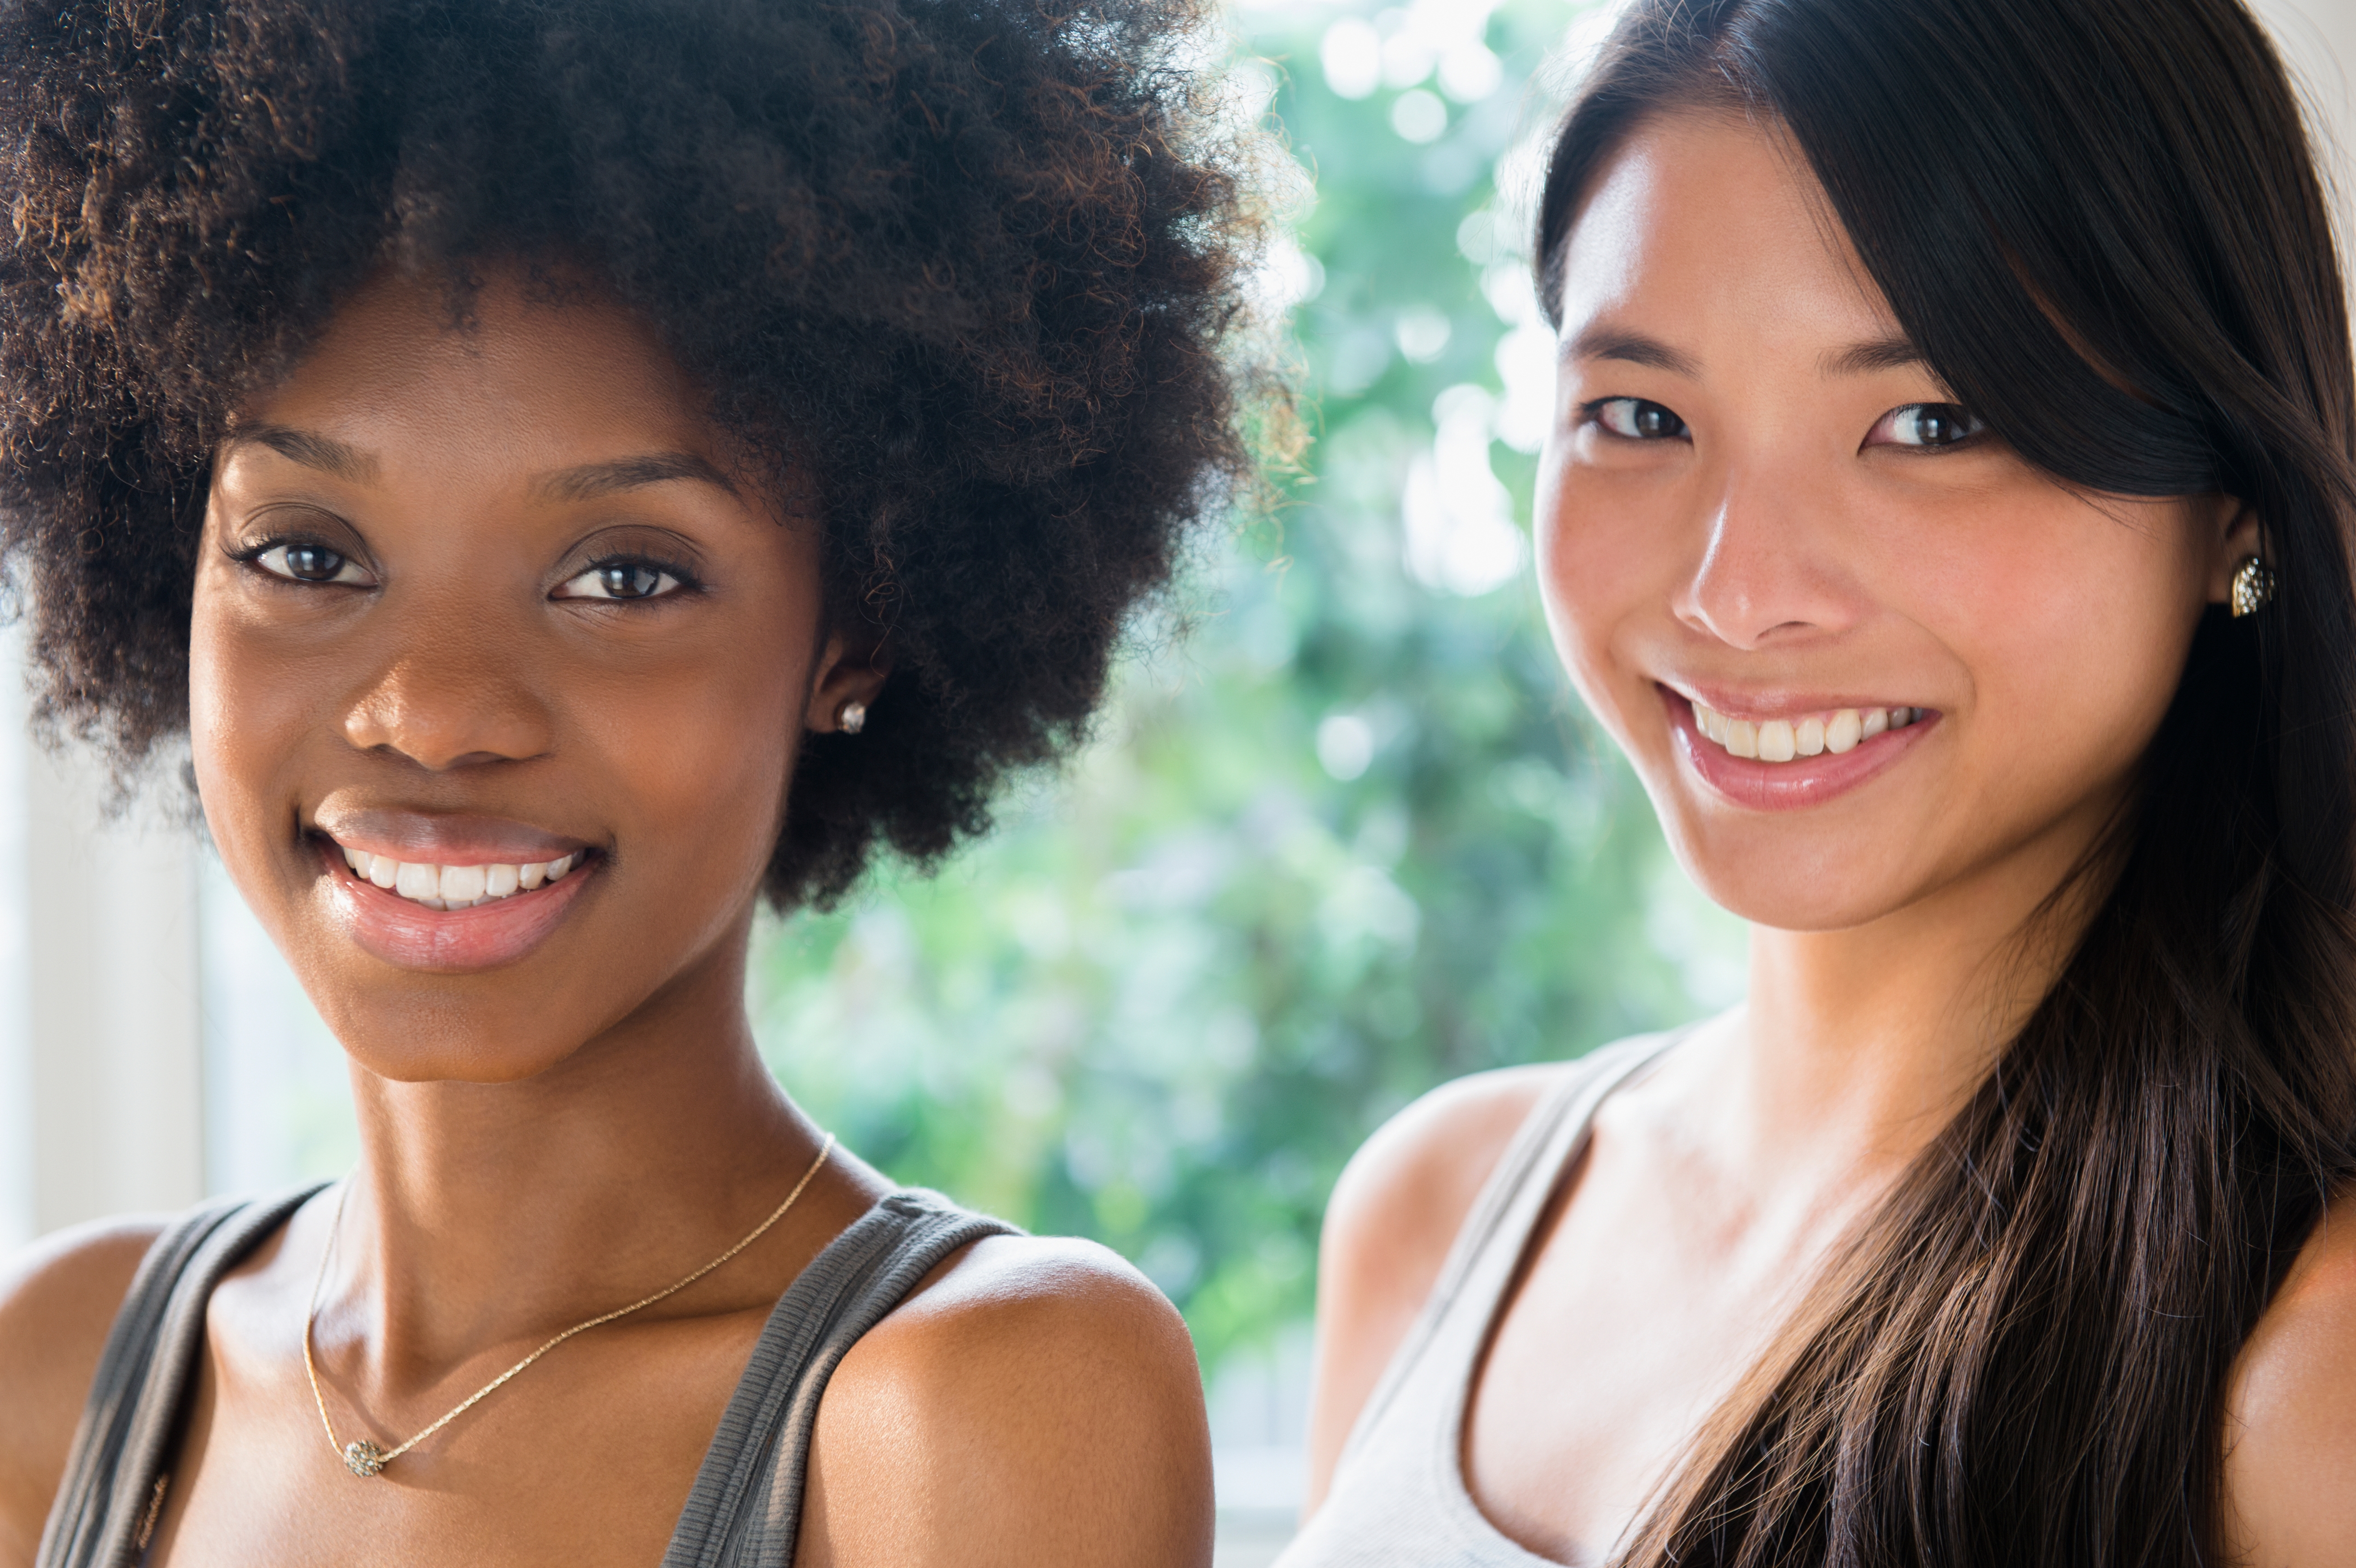 Two young women smiling facing forward.